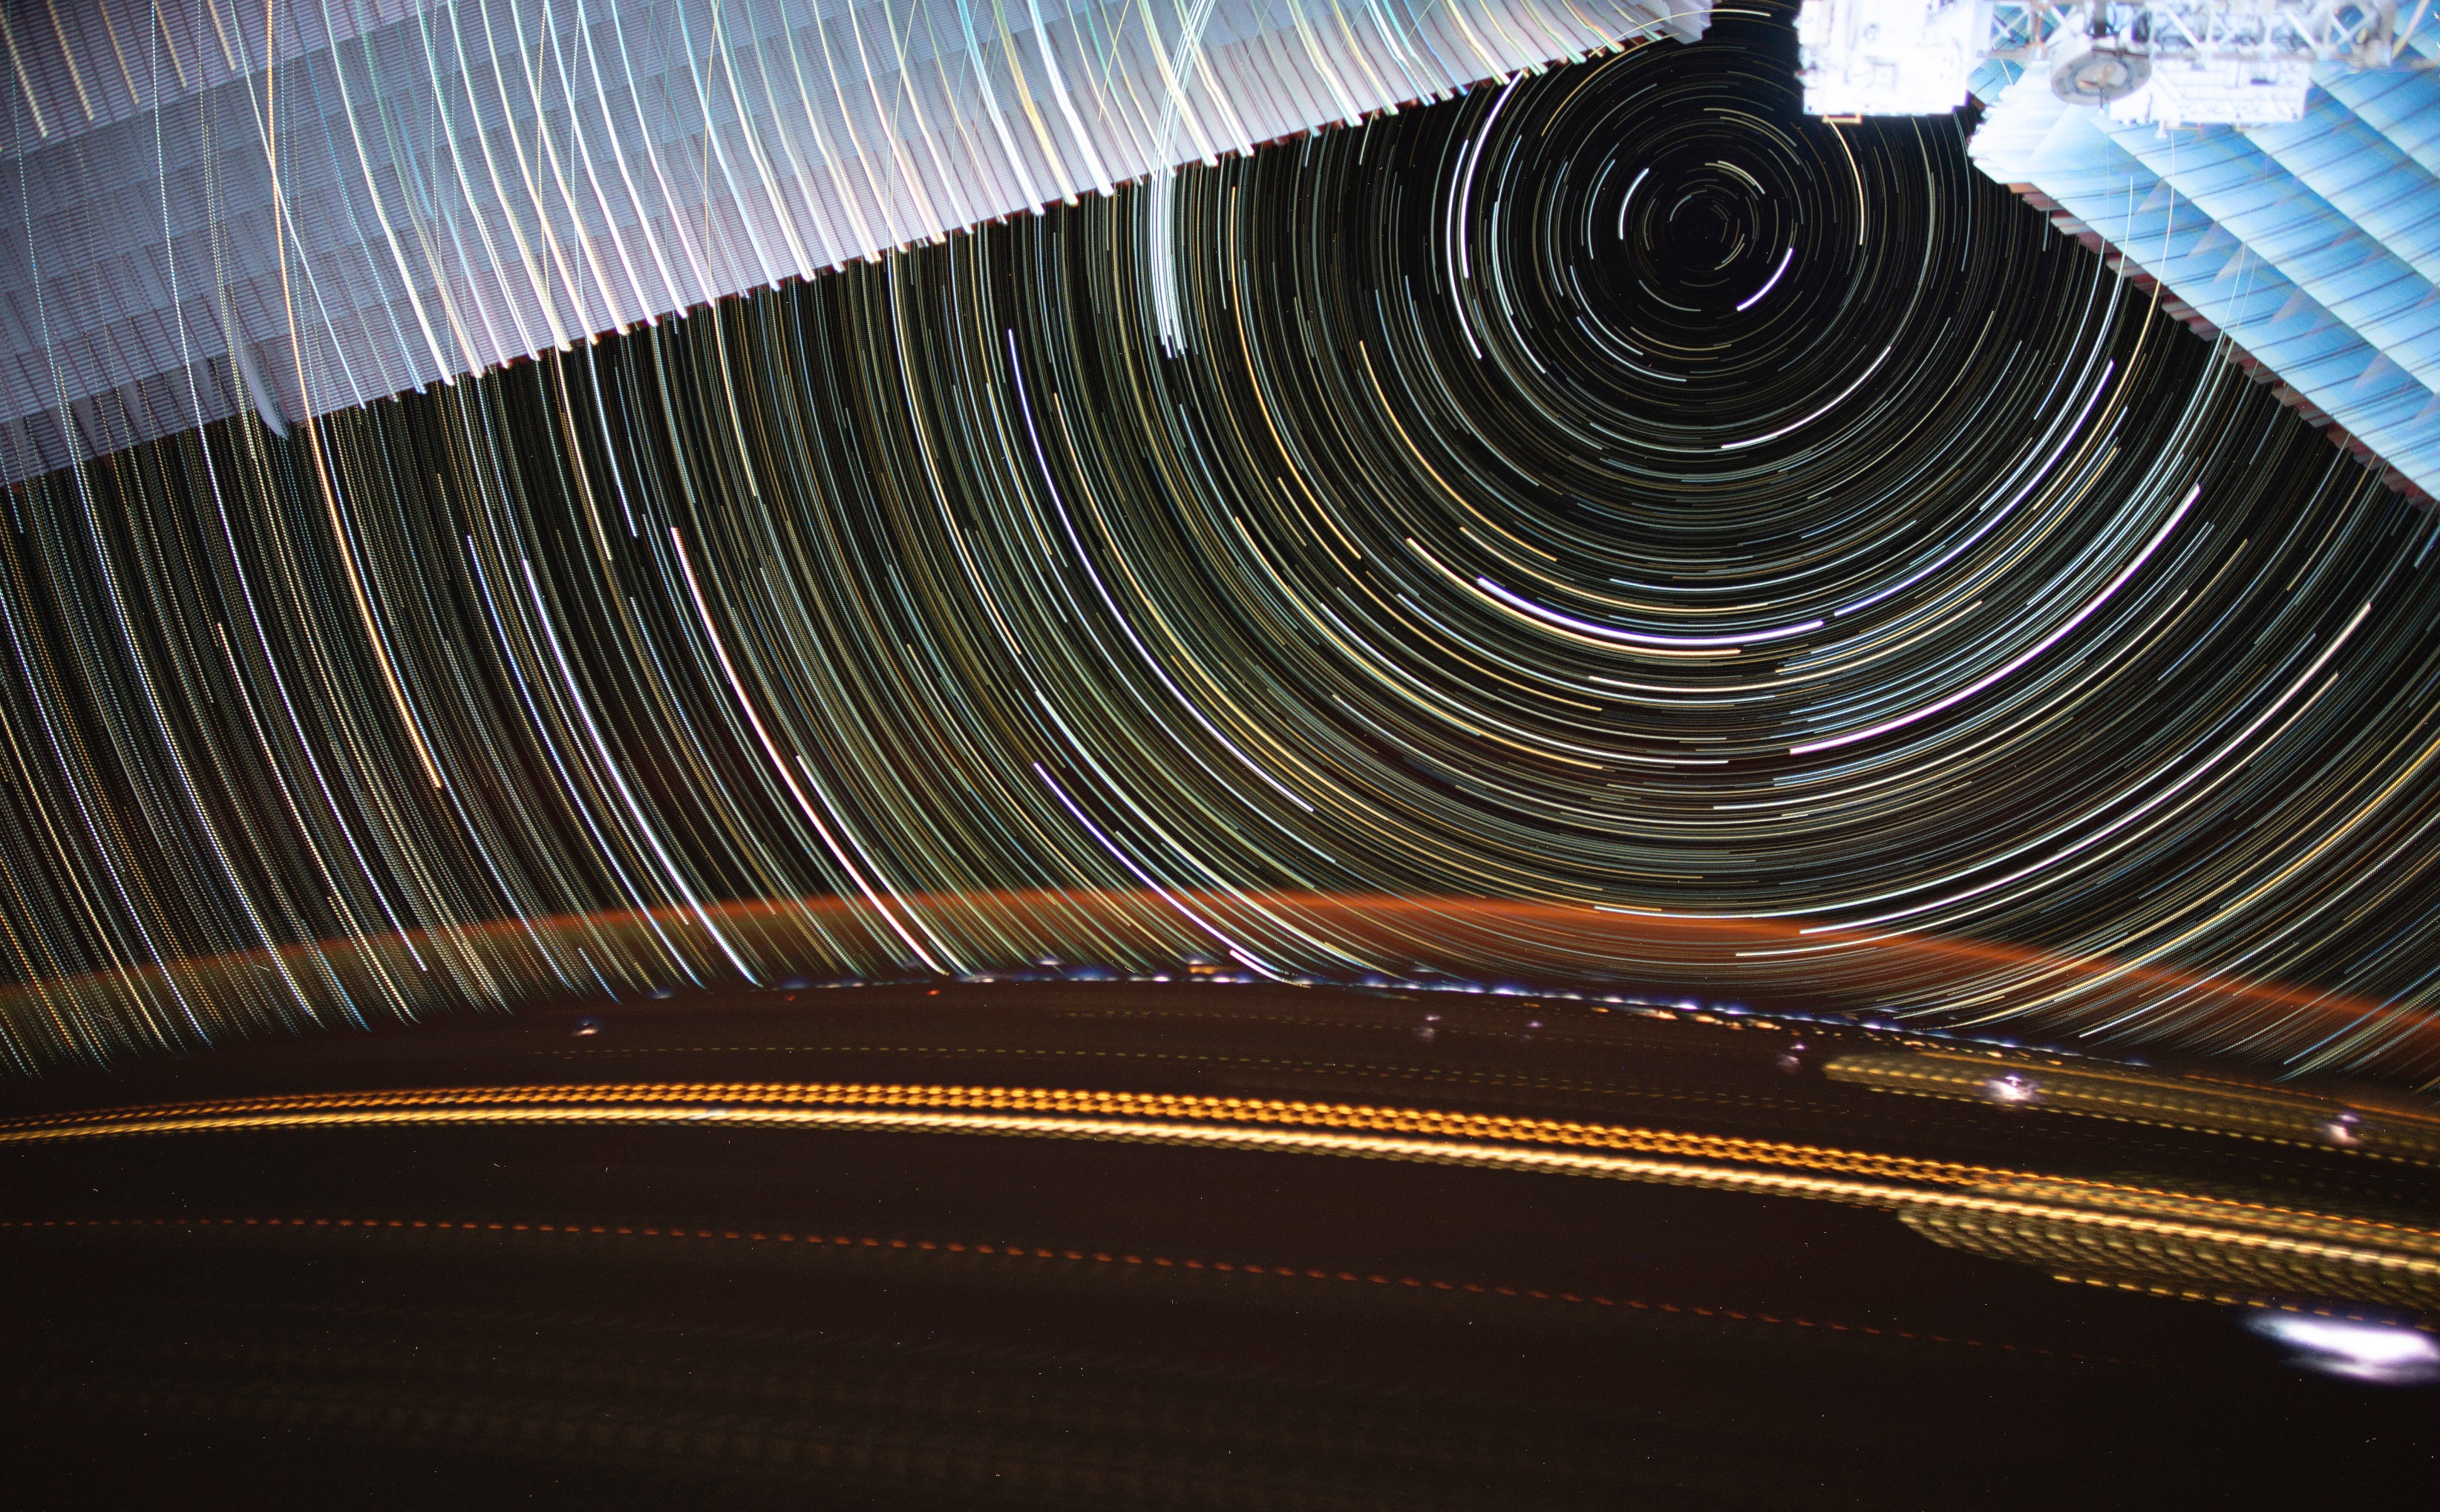 Estelas de luz cruzan la Tierra mientras las estelas de estrellas giran sobre nosotros en esta impresionante fotografía de larga exposición tomada por la astronauta de la NASA Christina Koch en la Estación Espacial Internacional.  En la parte superior del marco se encuentran los paneles solares de la estación espacial.  Abajo, los relámpagos se esparcen por la superficie de la Tierra, mientras que un resplandor naranja ilumina la atmósfera.